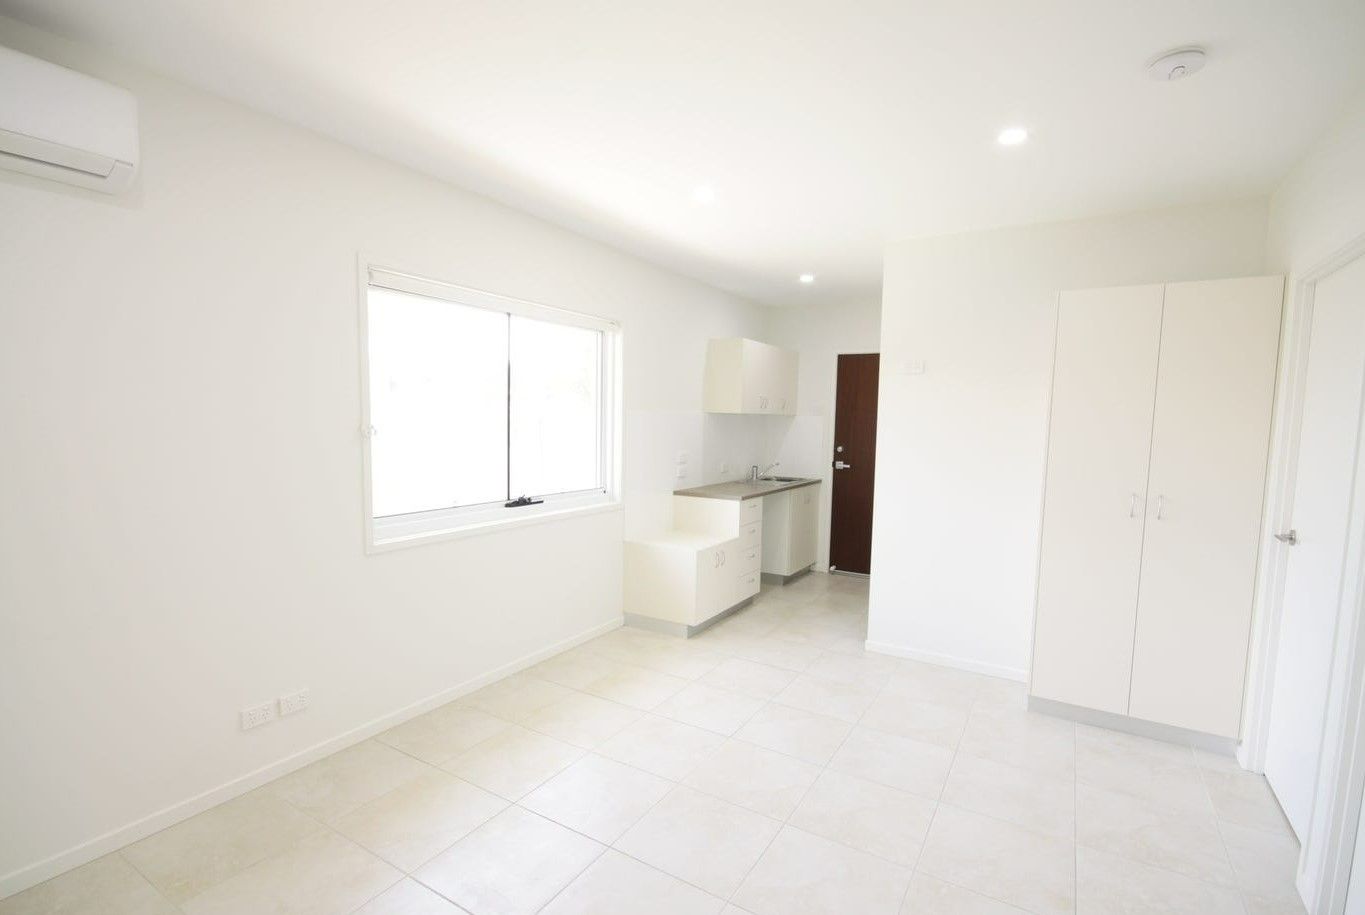 2 bedrooms Apartment / Unit / Flat in 297B Nicklin Way WARANA QLD, 4575